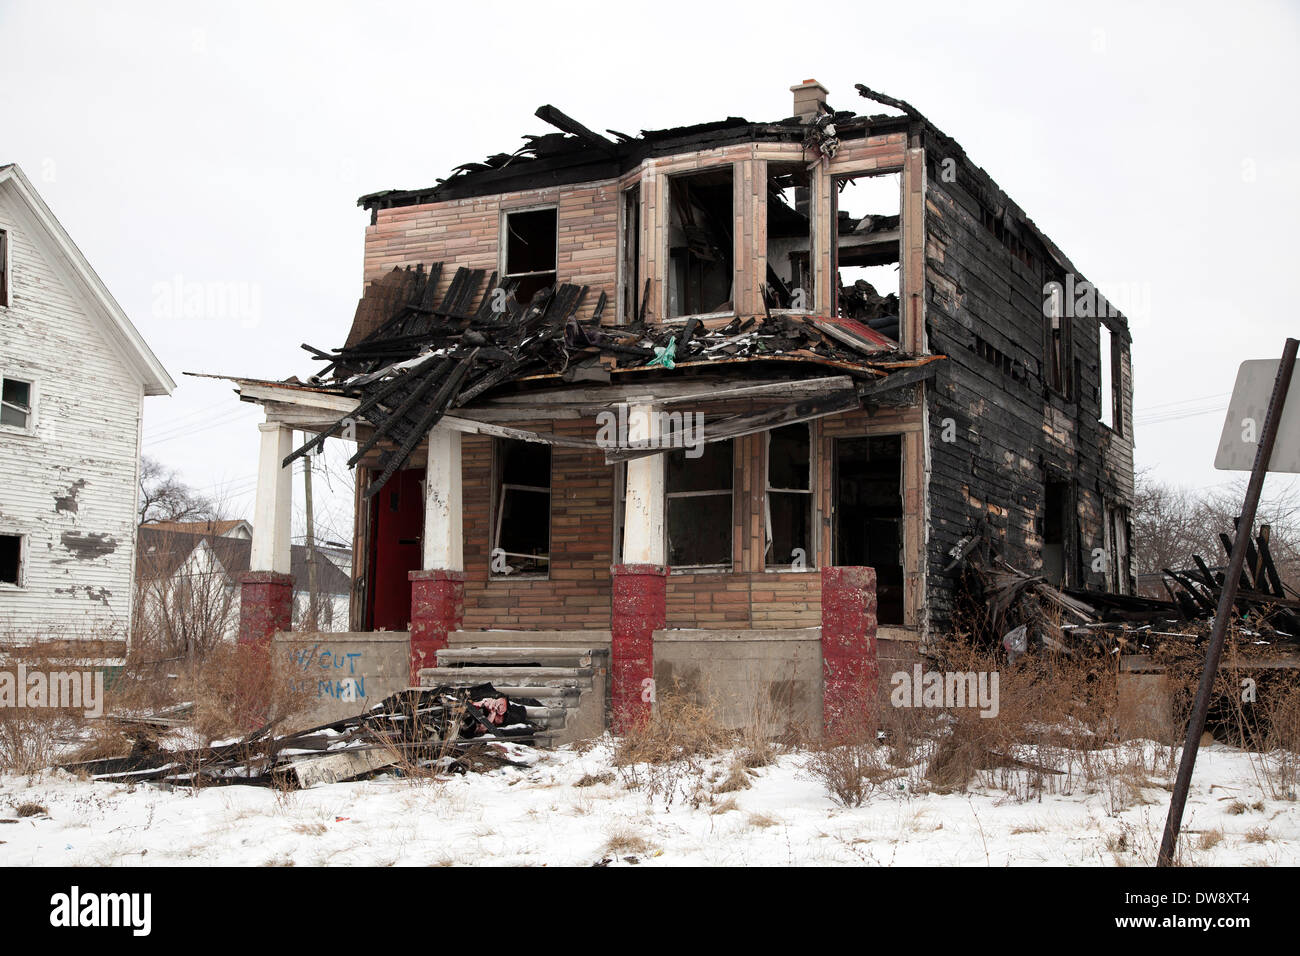 Vacante, viviendas quemadas, Detroit, Michigan, EE.UU. Foto de stock